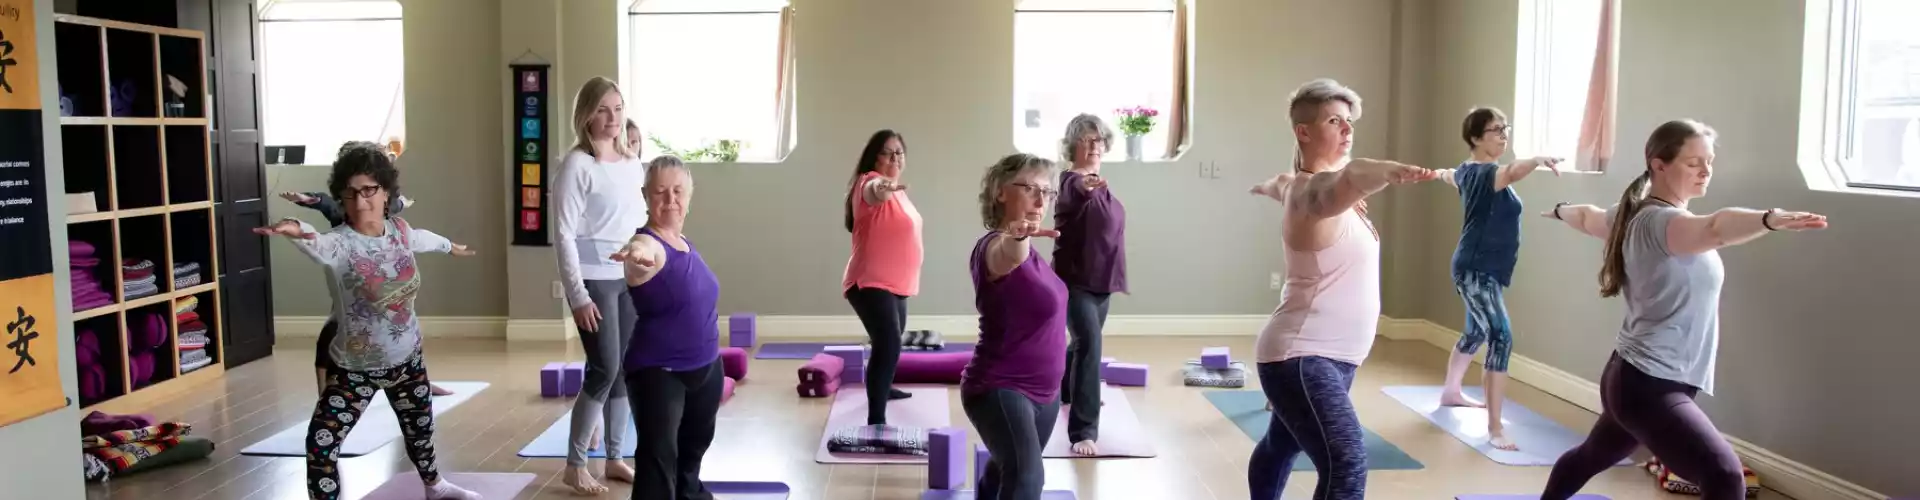 Las diez batidas: una secuencia de yoga de 15 minutos para todas las articulaciones